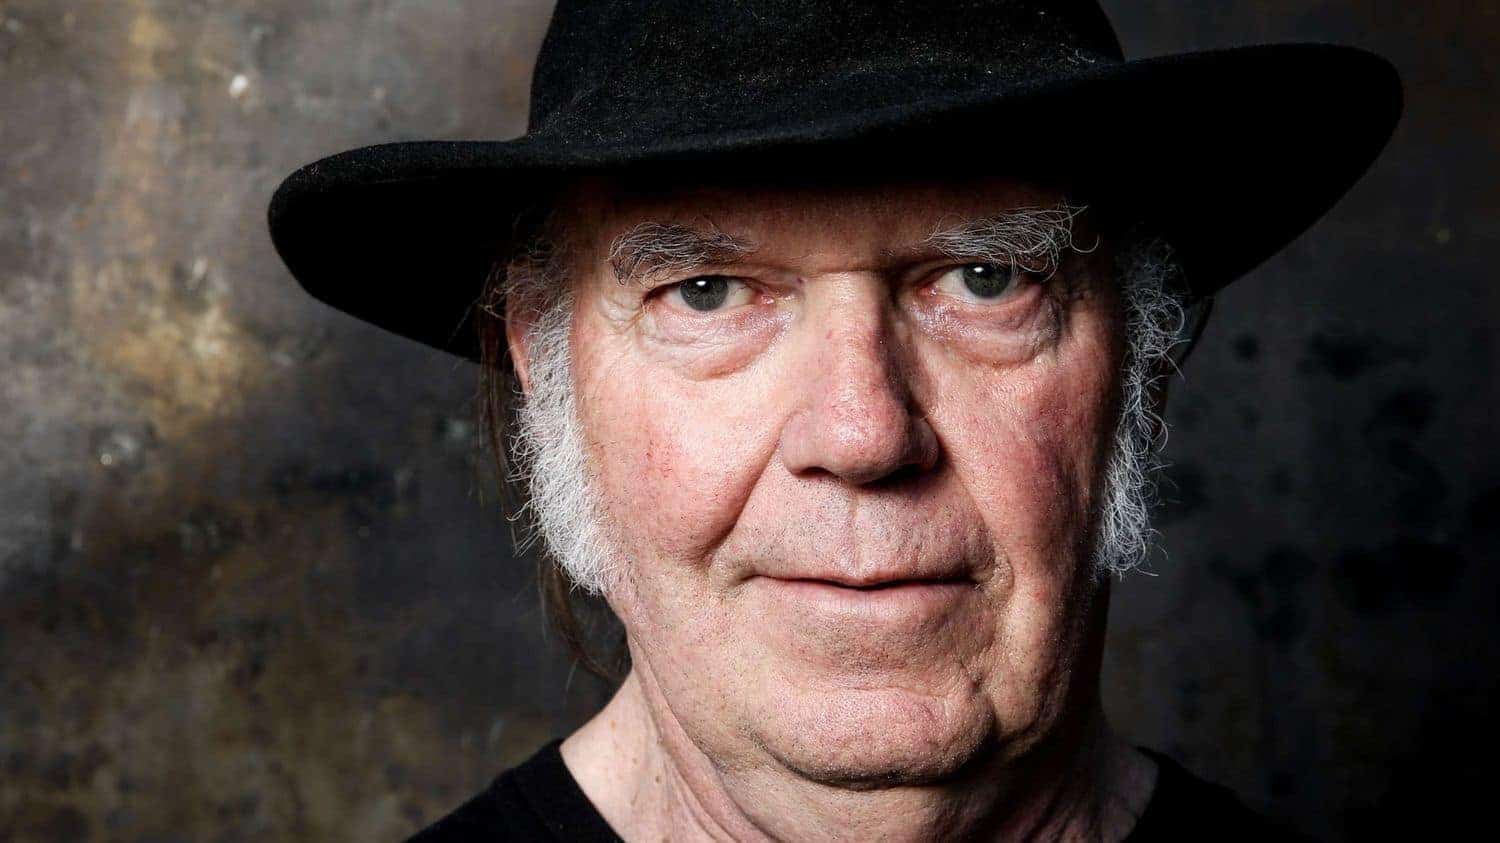 Der kanadische Sänger Neil Young